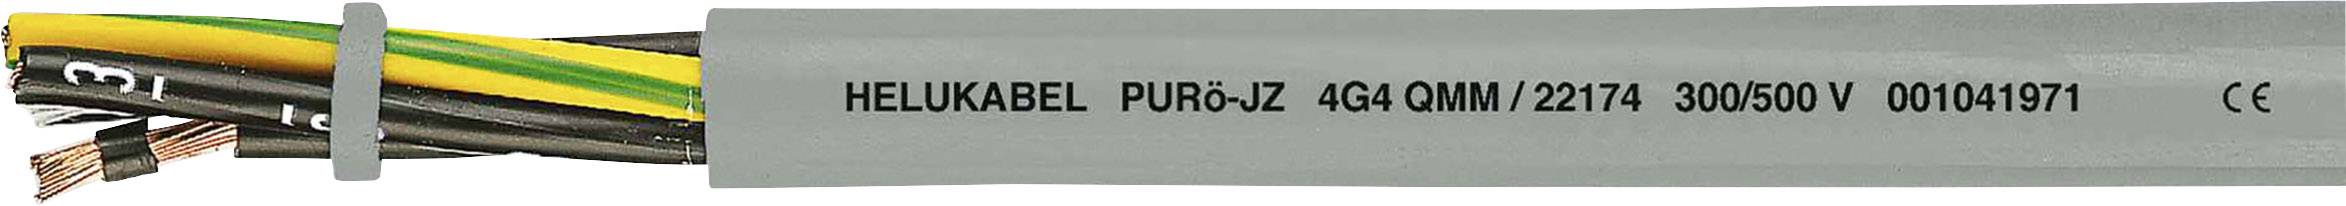 HELUKABEL PURö-JZ Steuerleitung 7 G 0.75 mm² Grau 22120 100 m